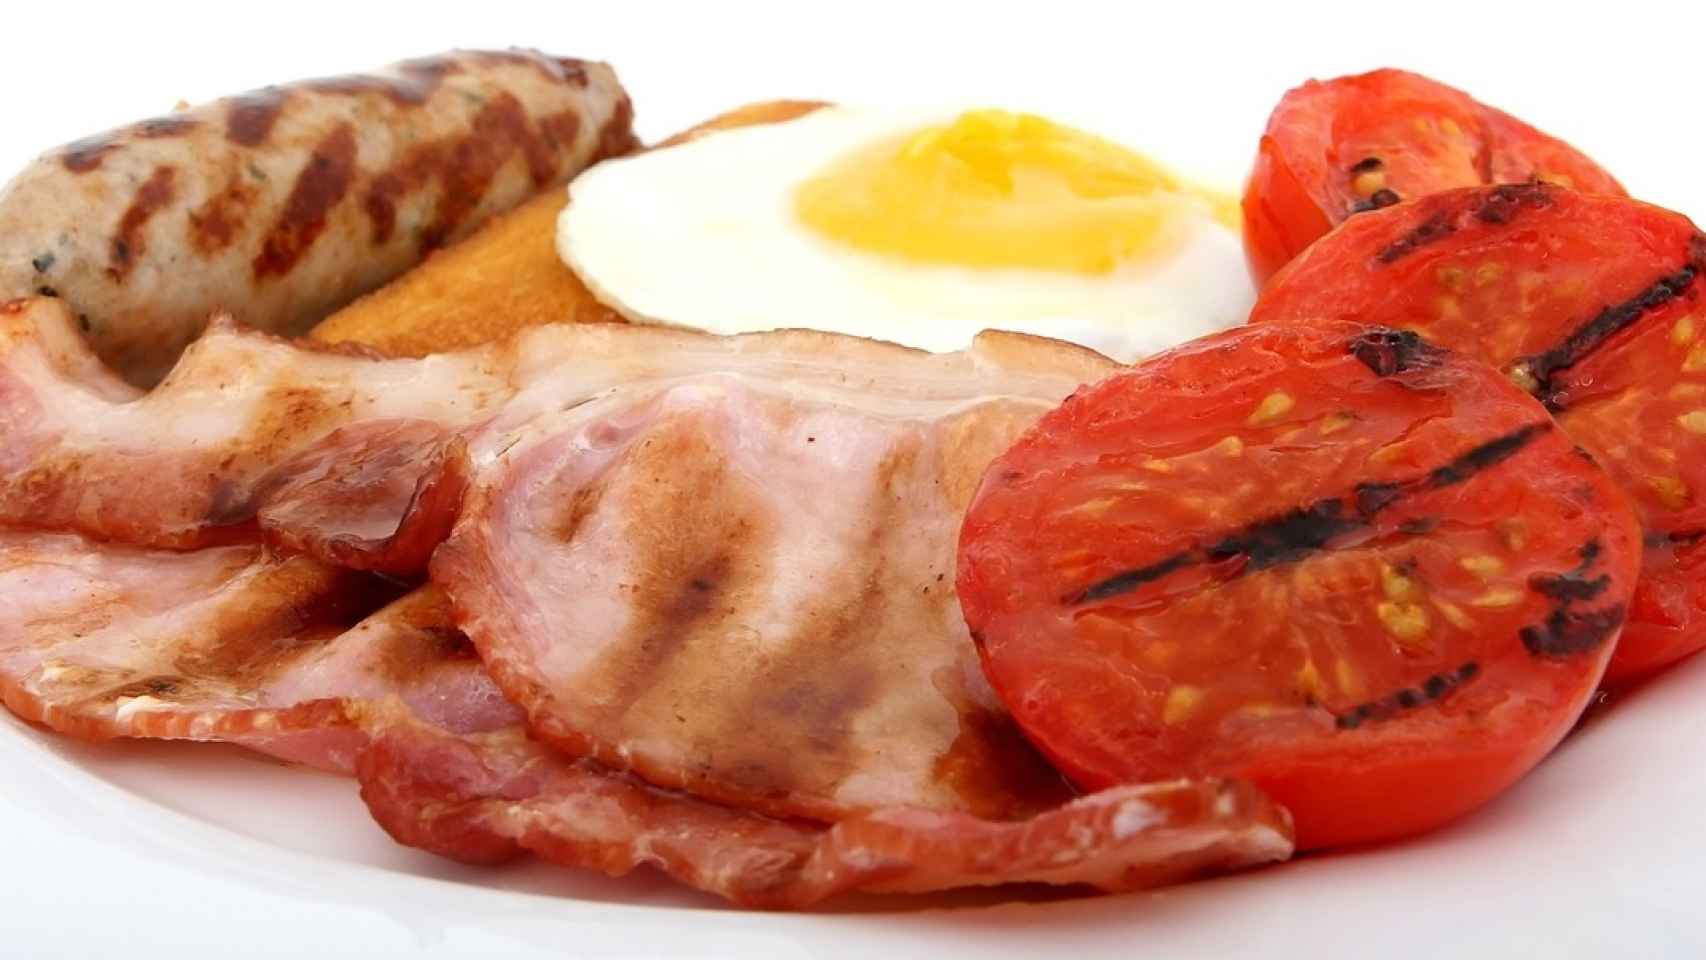 El típico e hipercalórico desayuno inglés.